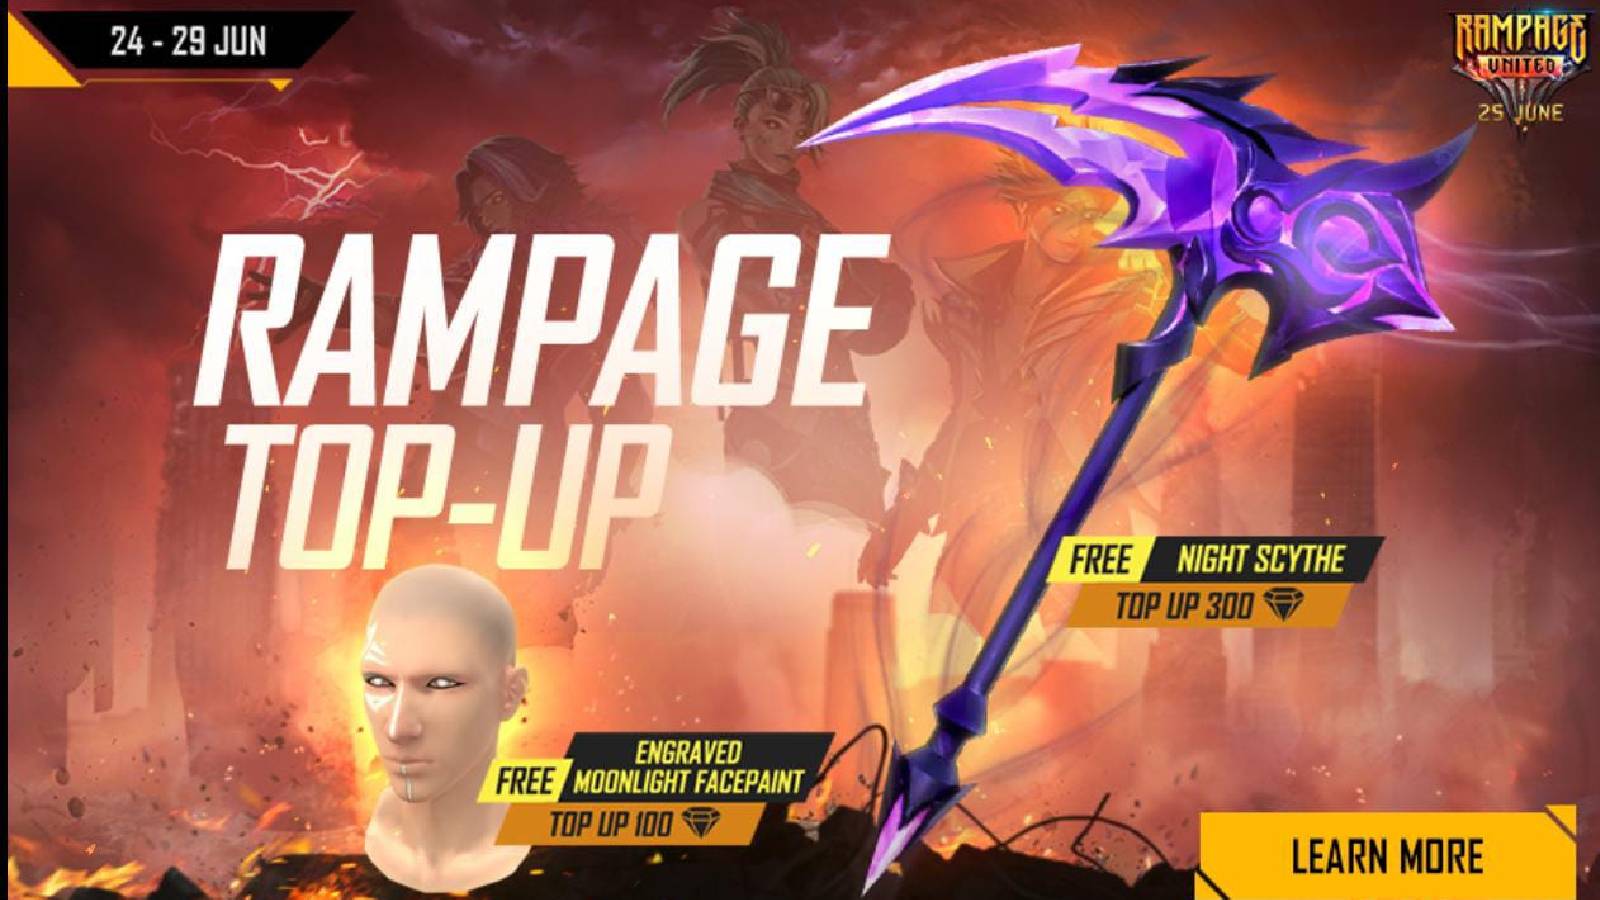 Бесплатное событие пополнения баланса Fire Rampage: получите эксклюзивную раскраску для лица «Ночная коса» и «Лунный свет».